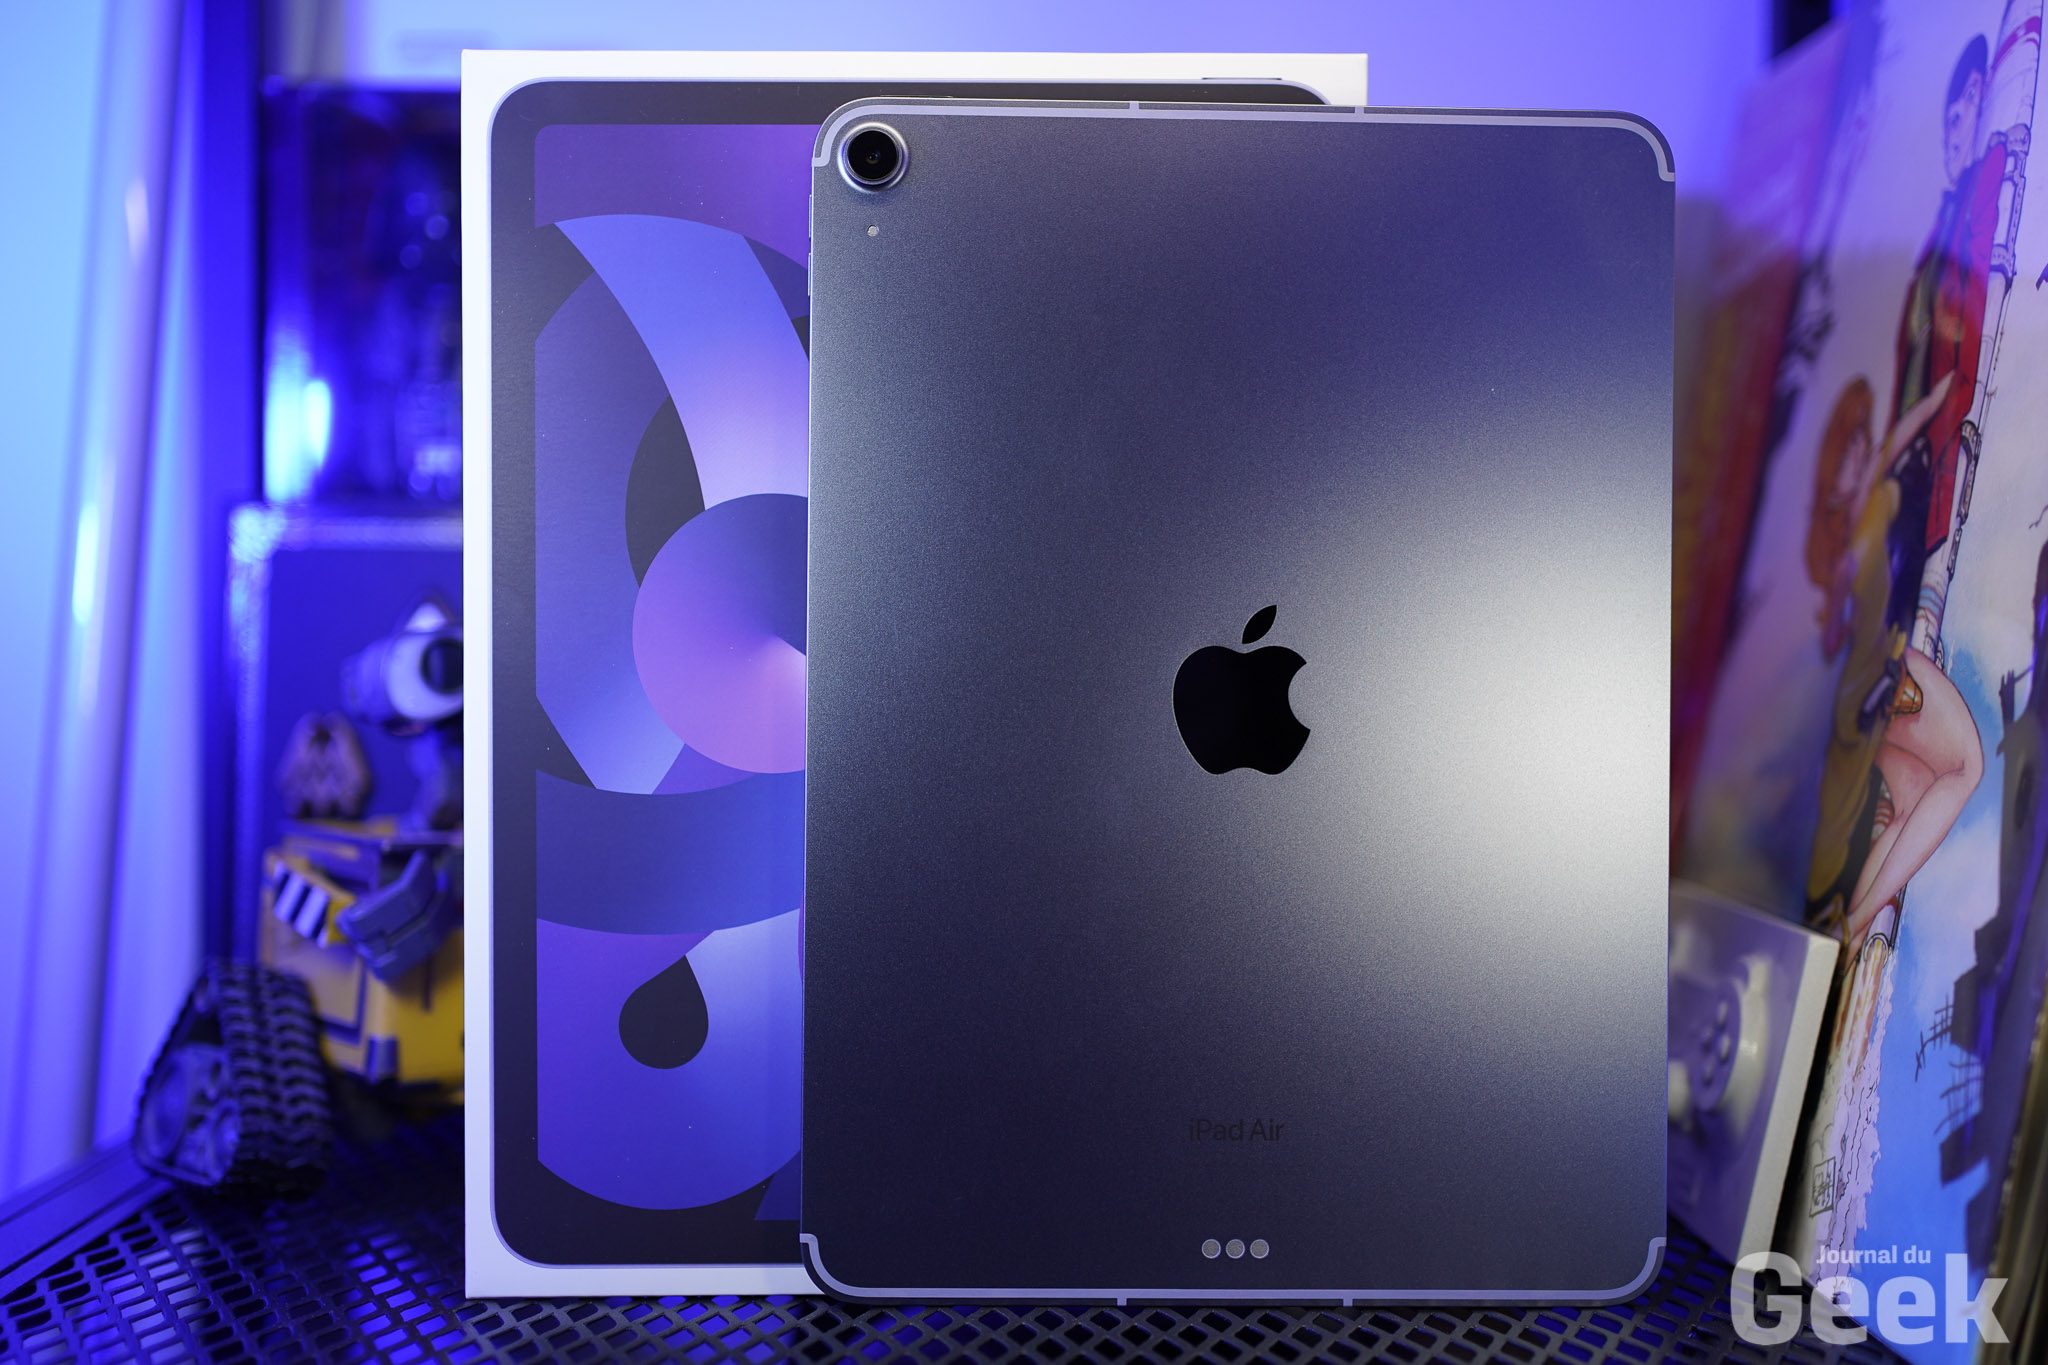 Apple iPad Pro 12.9 128 Go Wi-Fi + 5G argent (2022) au meilleur prix sur